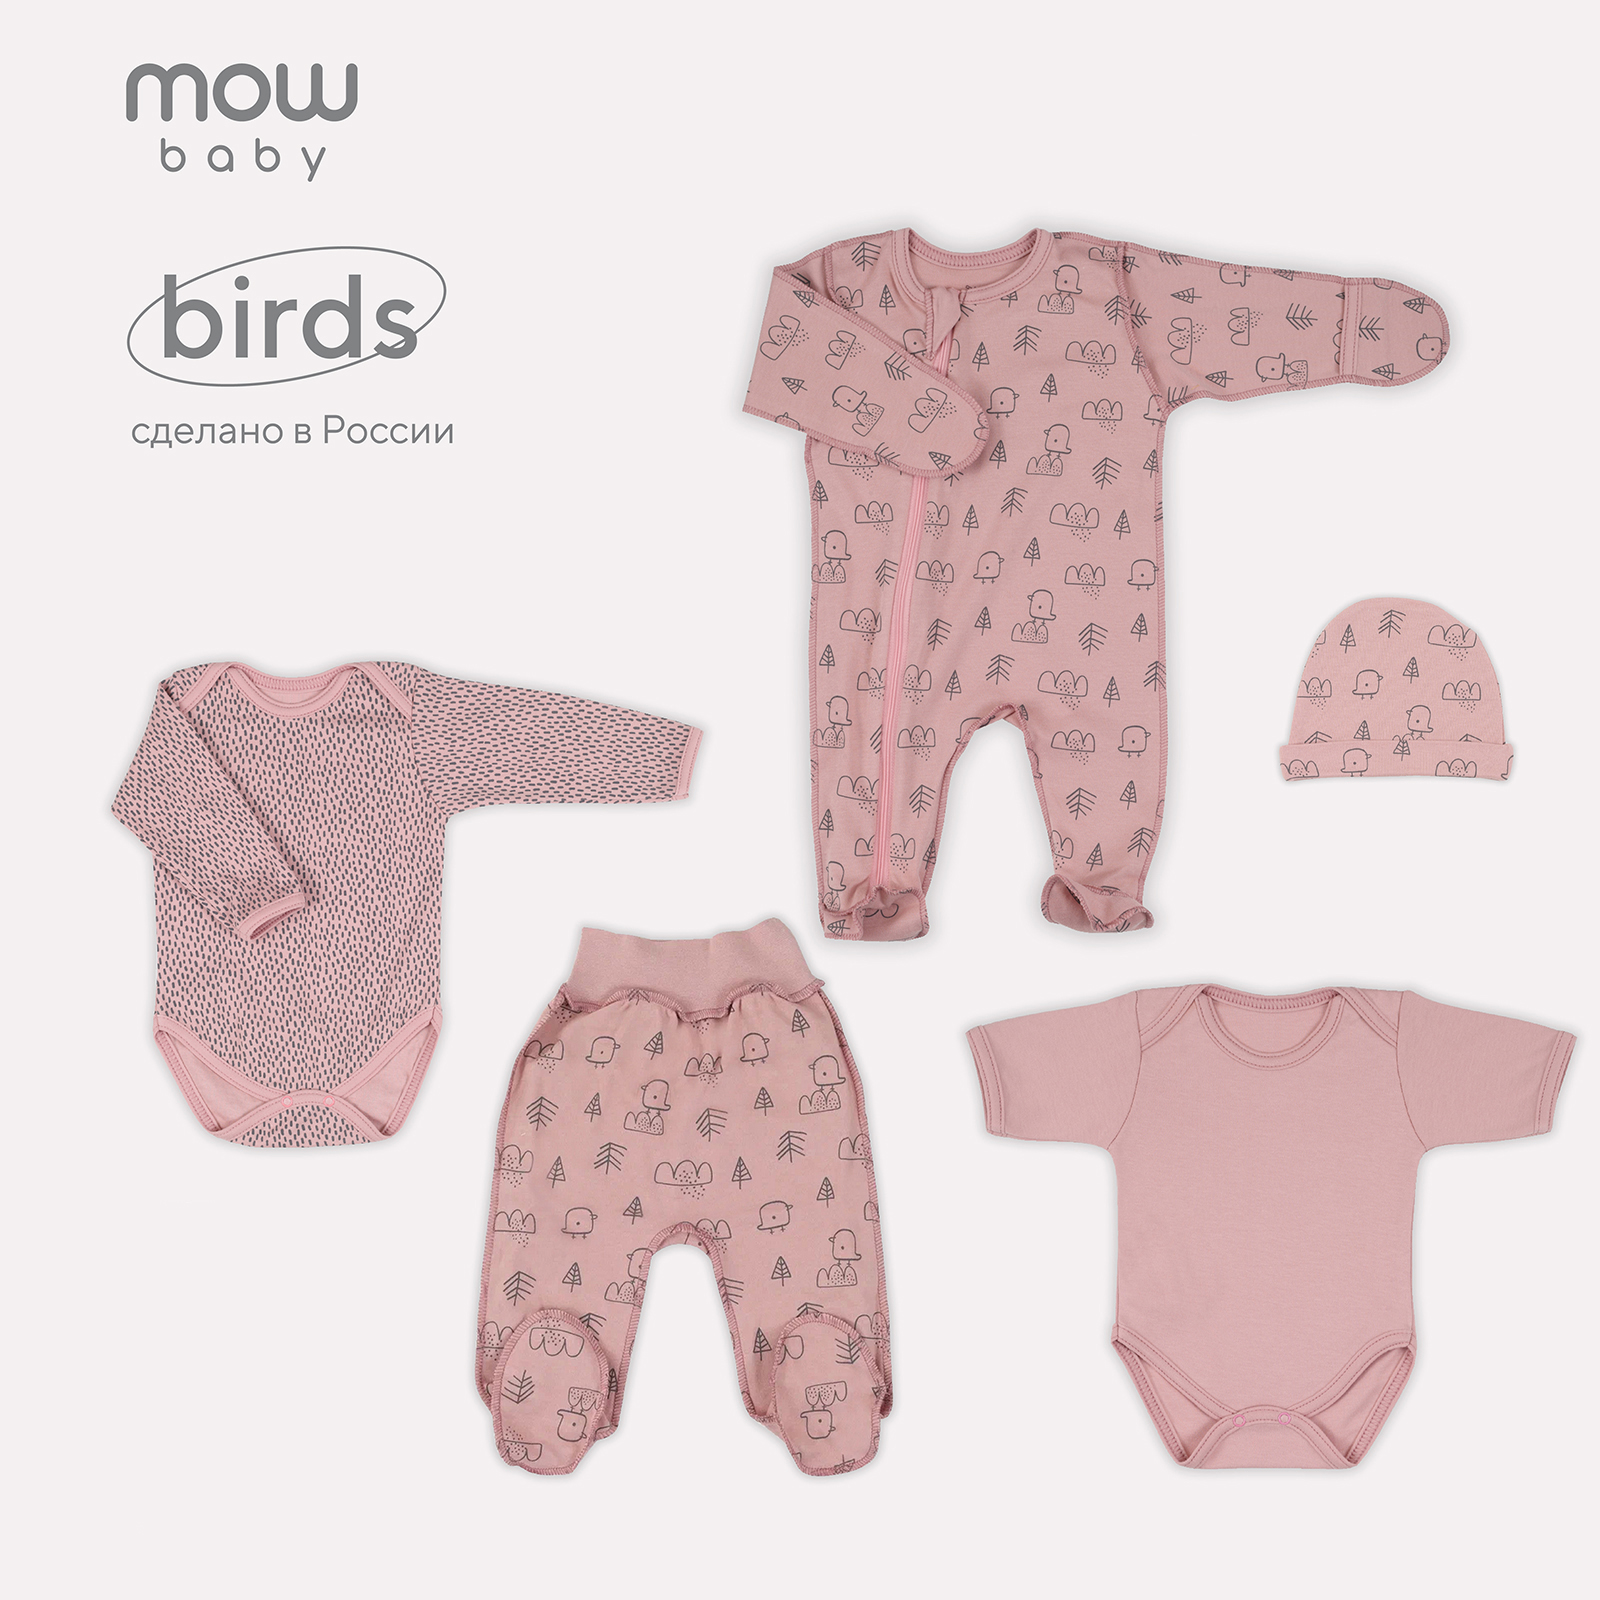 Комплект одежды для новорожденного MowBaby Birds Rose 5-82 р.62 (5 предметов) mowbaby комплект для новорожденного birds 5 предметов